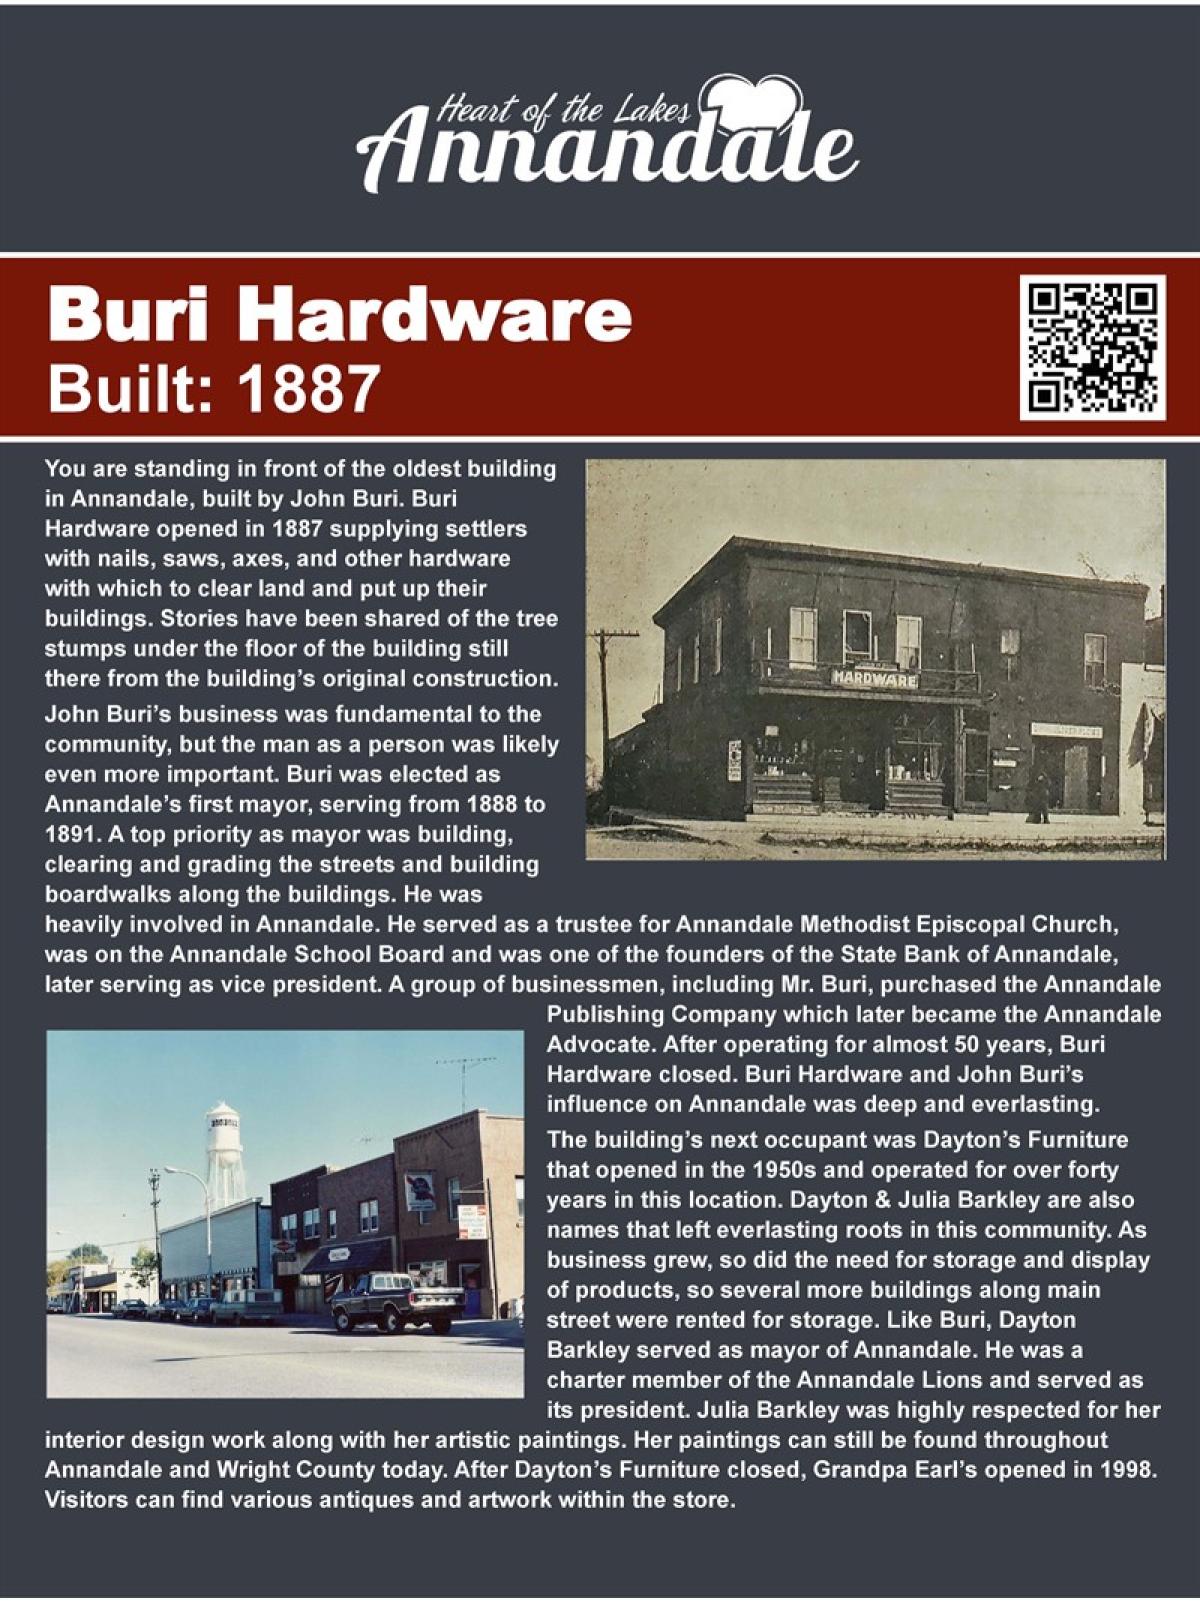 Buri Hardware  walking tour information